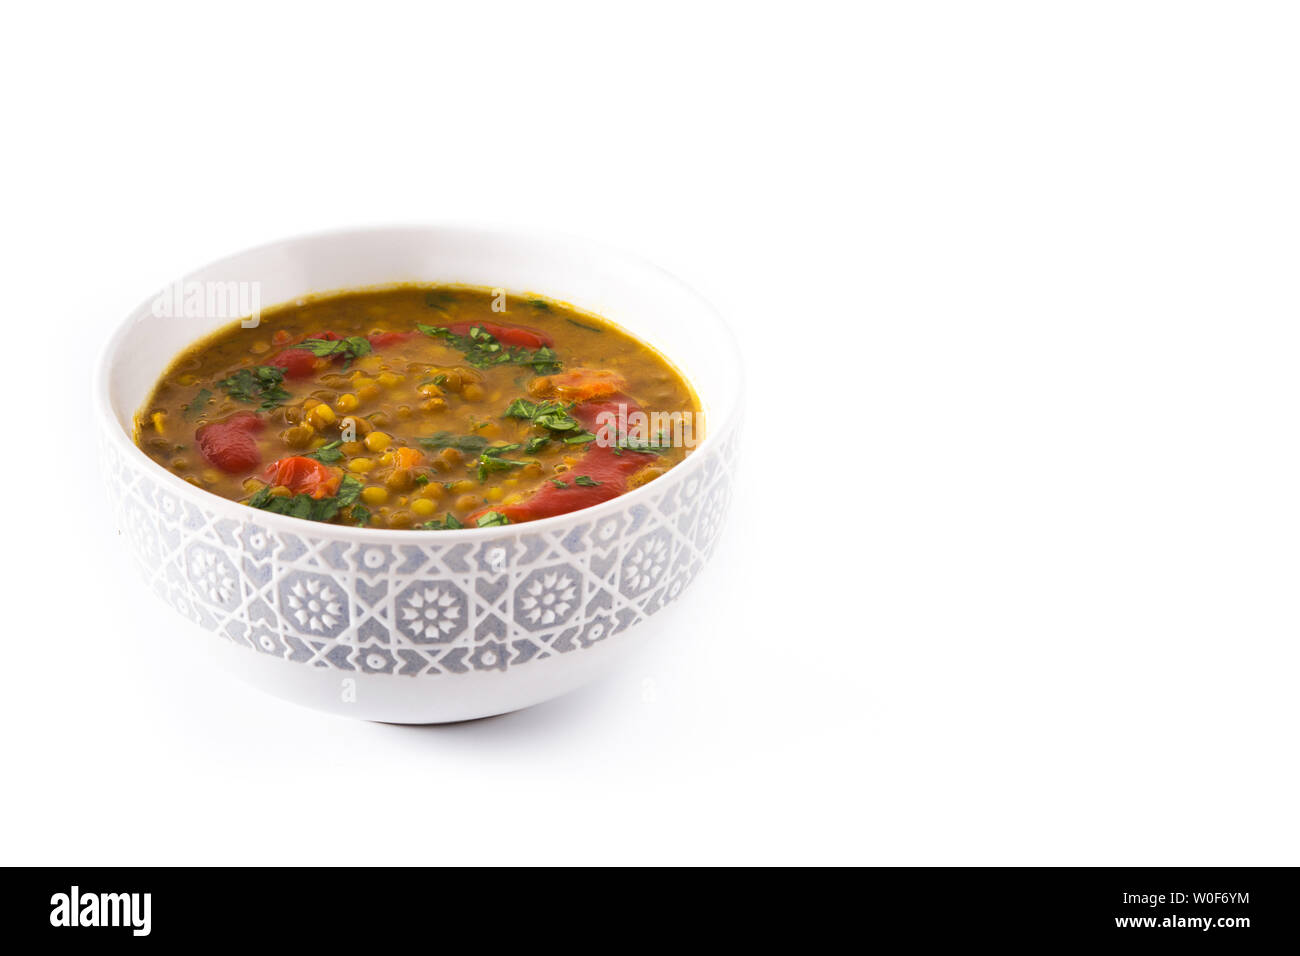 Soupe aux lentilles indiennes dal (dhal) dans un bol isolé sur fond blanc. Vue d'en haut Banque D'Images